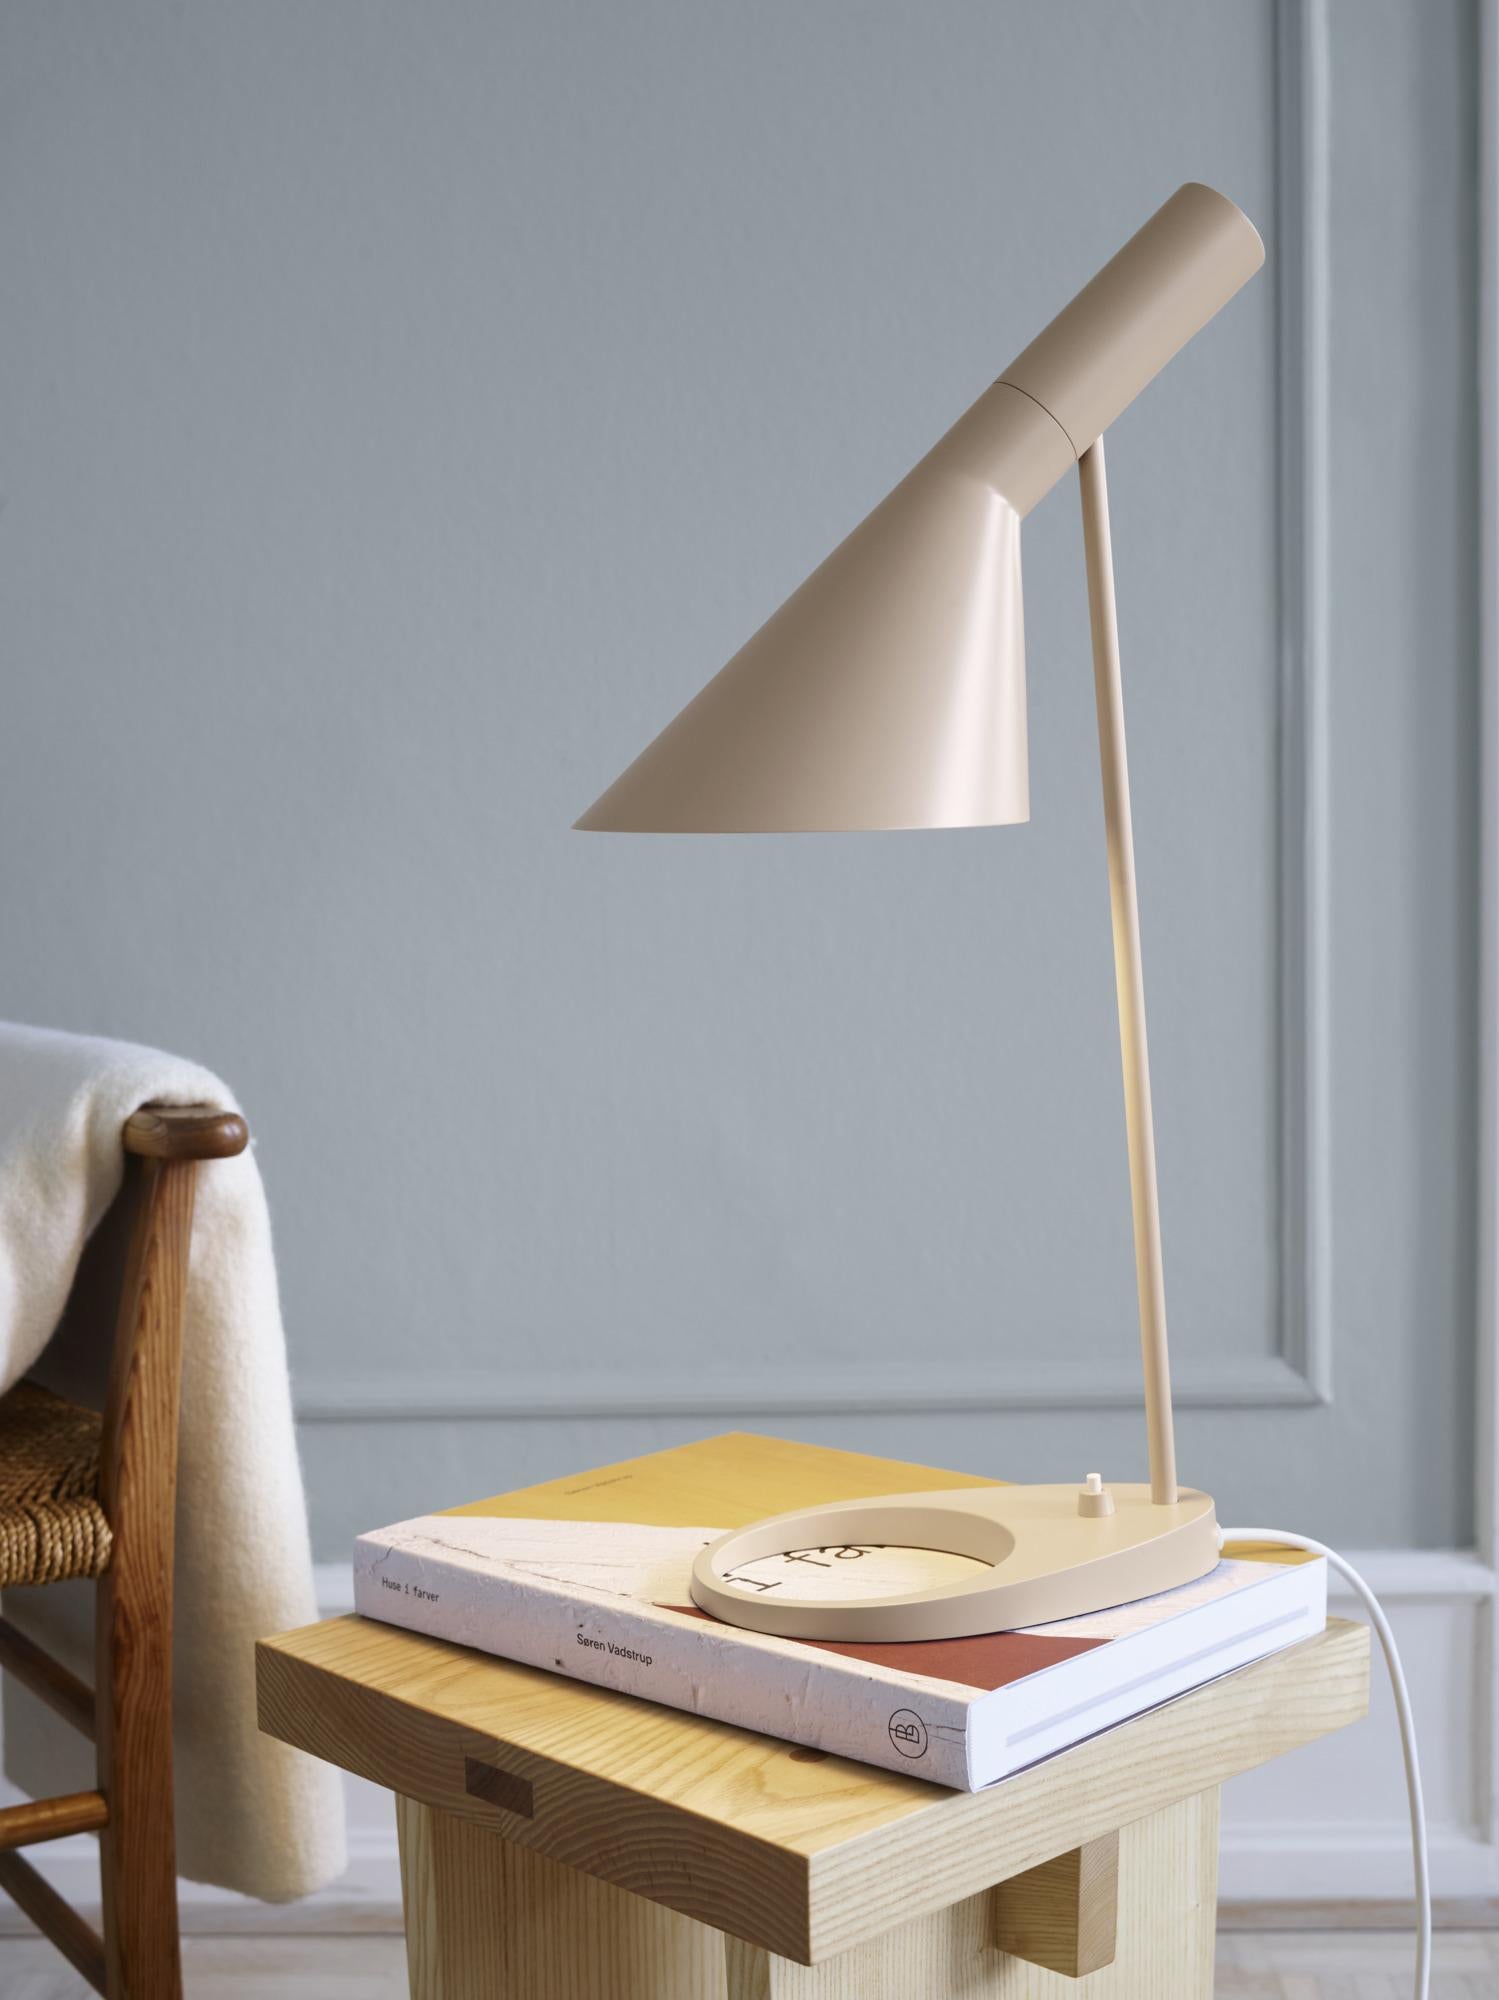 Lampe de table AJ d'Arne Jacobsen en sable chaud pour Louis Poulsen. 

La série AJ faisait partie de la collection de luminaires que le célèbre designer danois Arne Jacobsen a créée pour le premier hôtel SAS Royal en 1957. Aujourd'hui, ses designs